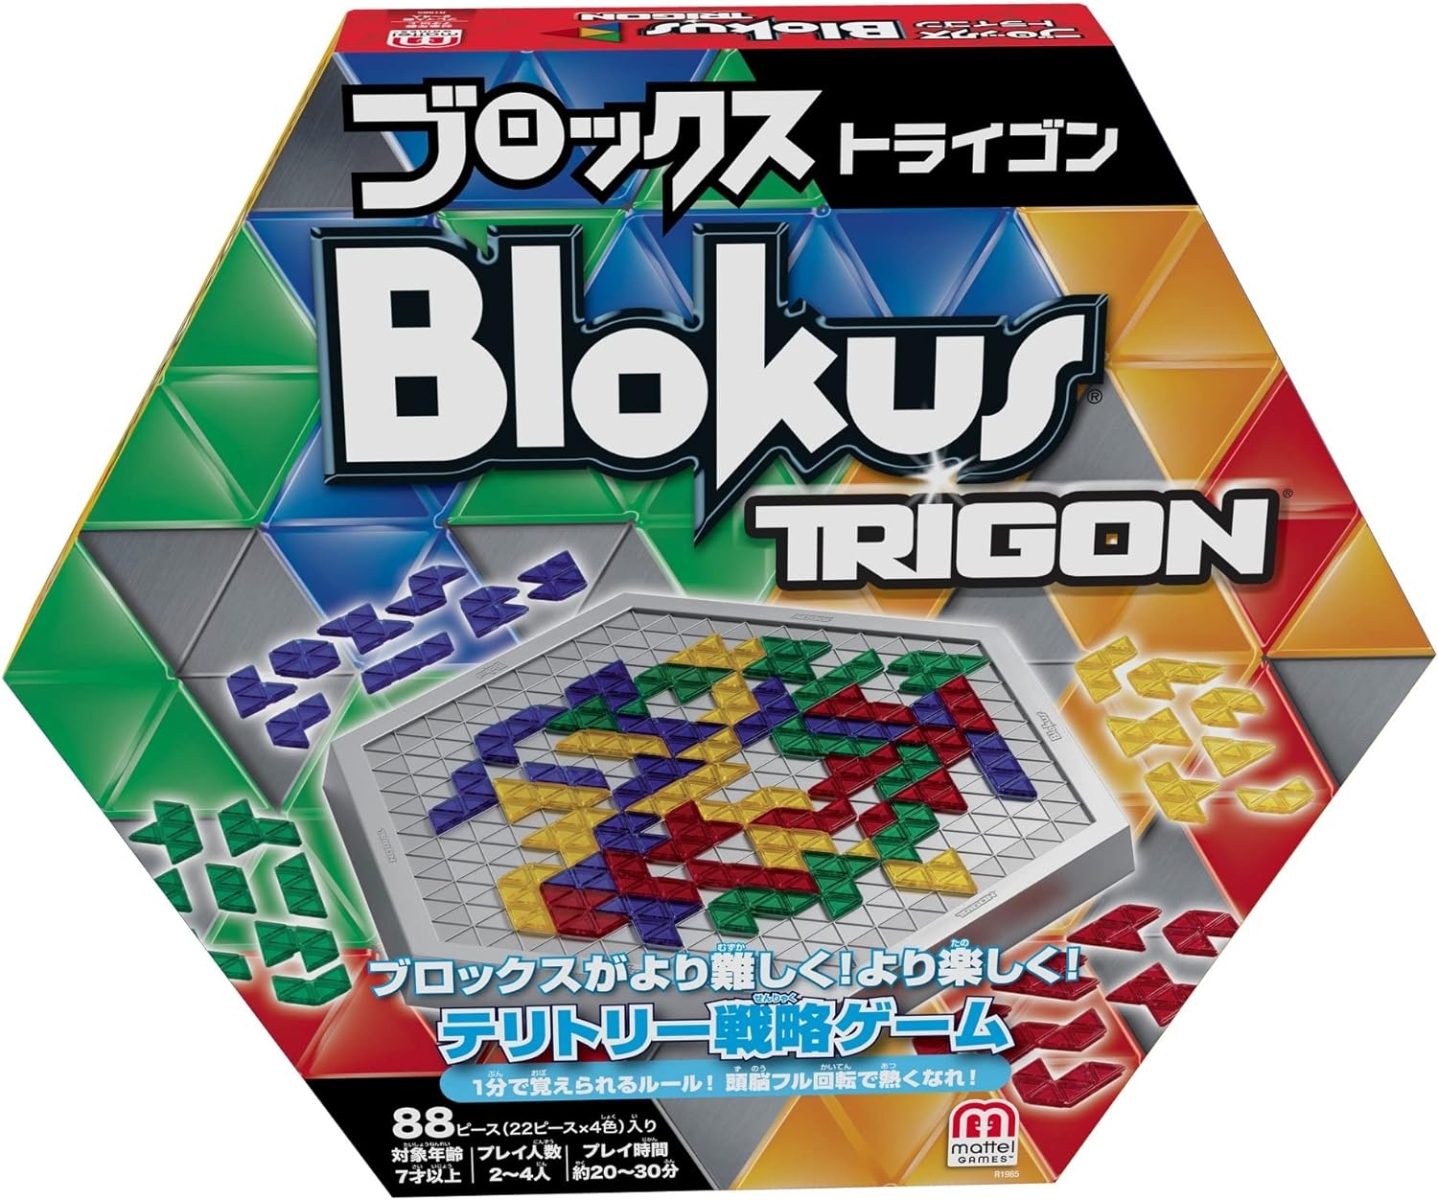 マテルゲーム(Mattel Game) ブロックストライゴン Blokus Trigon【知育ゲーム】【ボードゲーム】【7歳〜】R1985画像